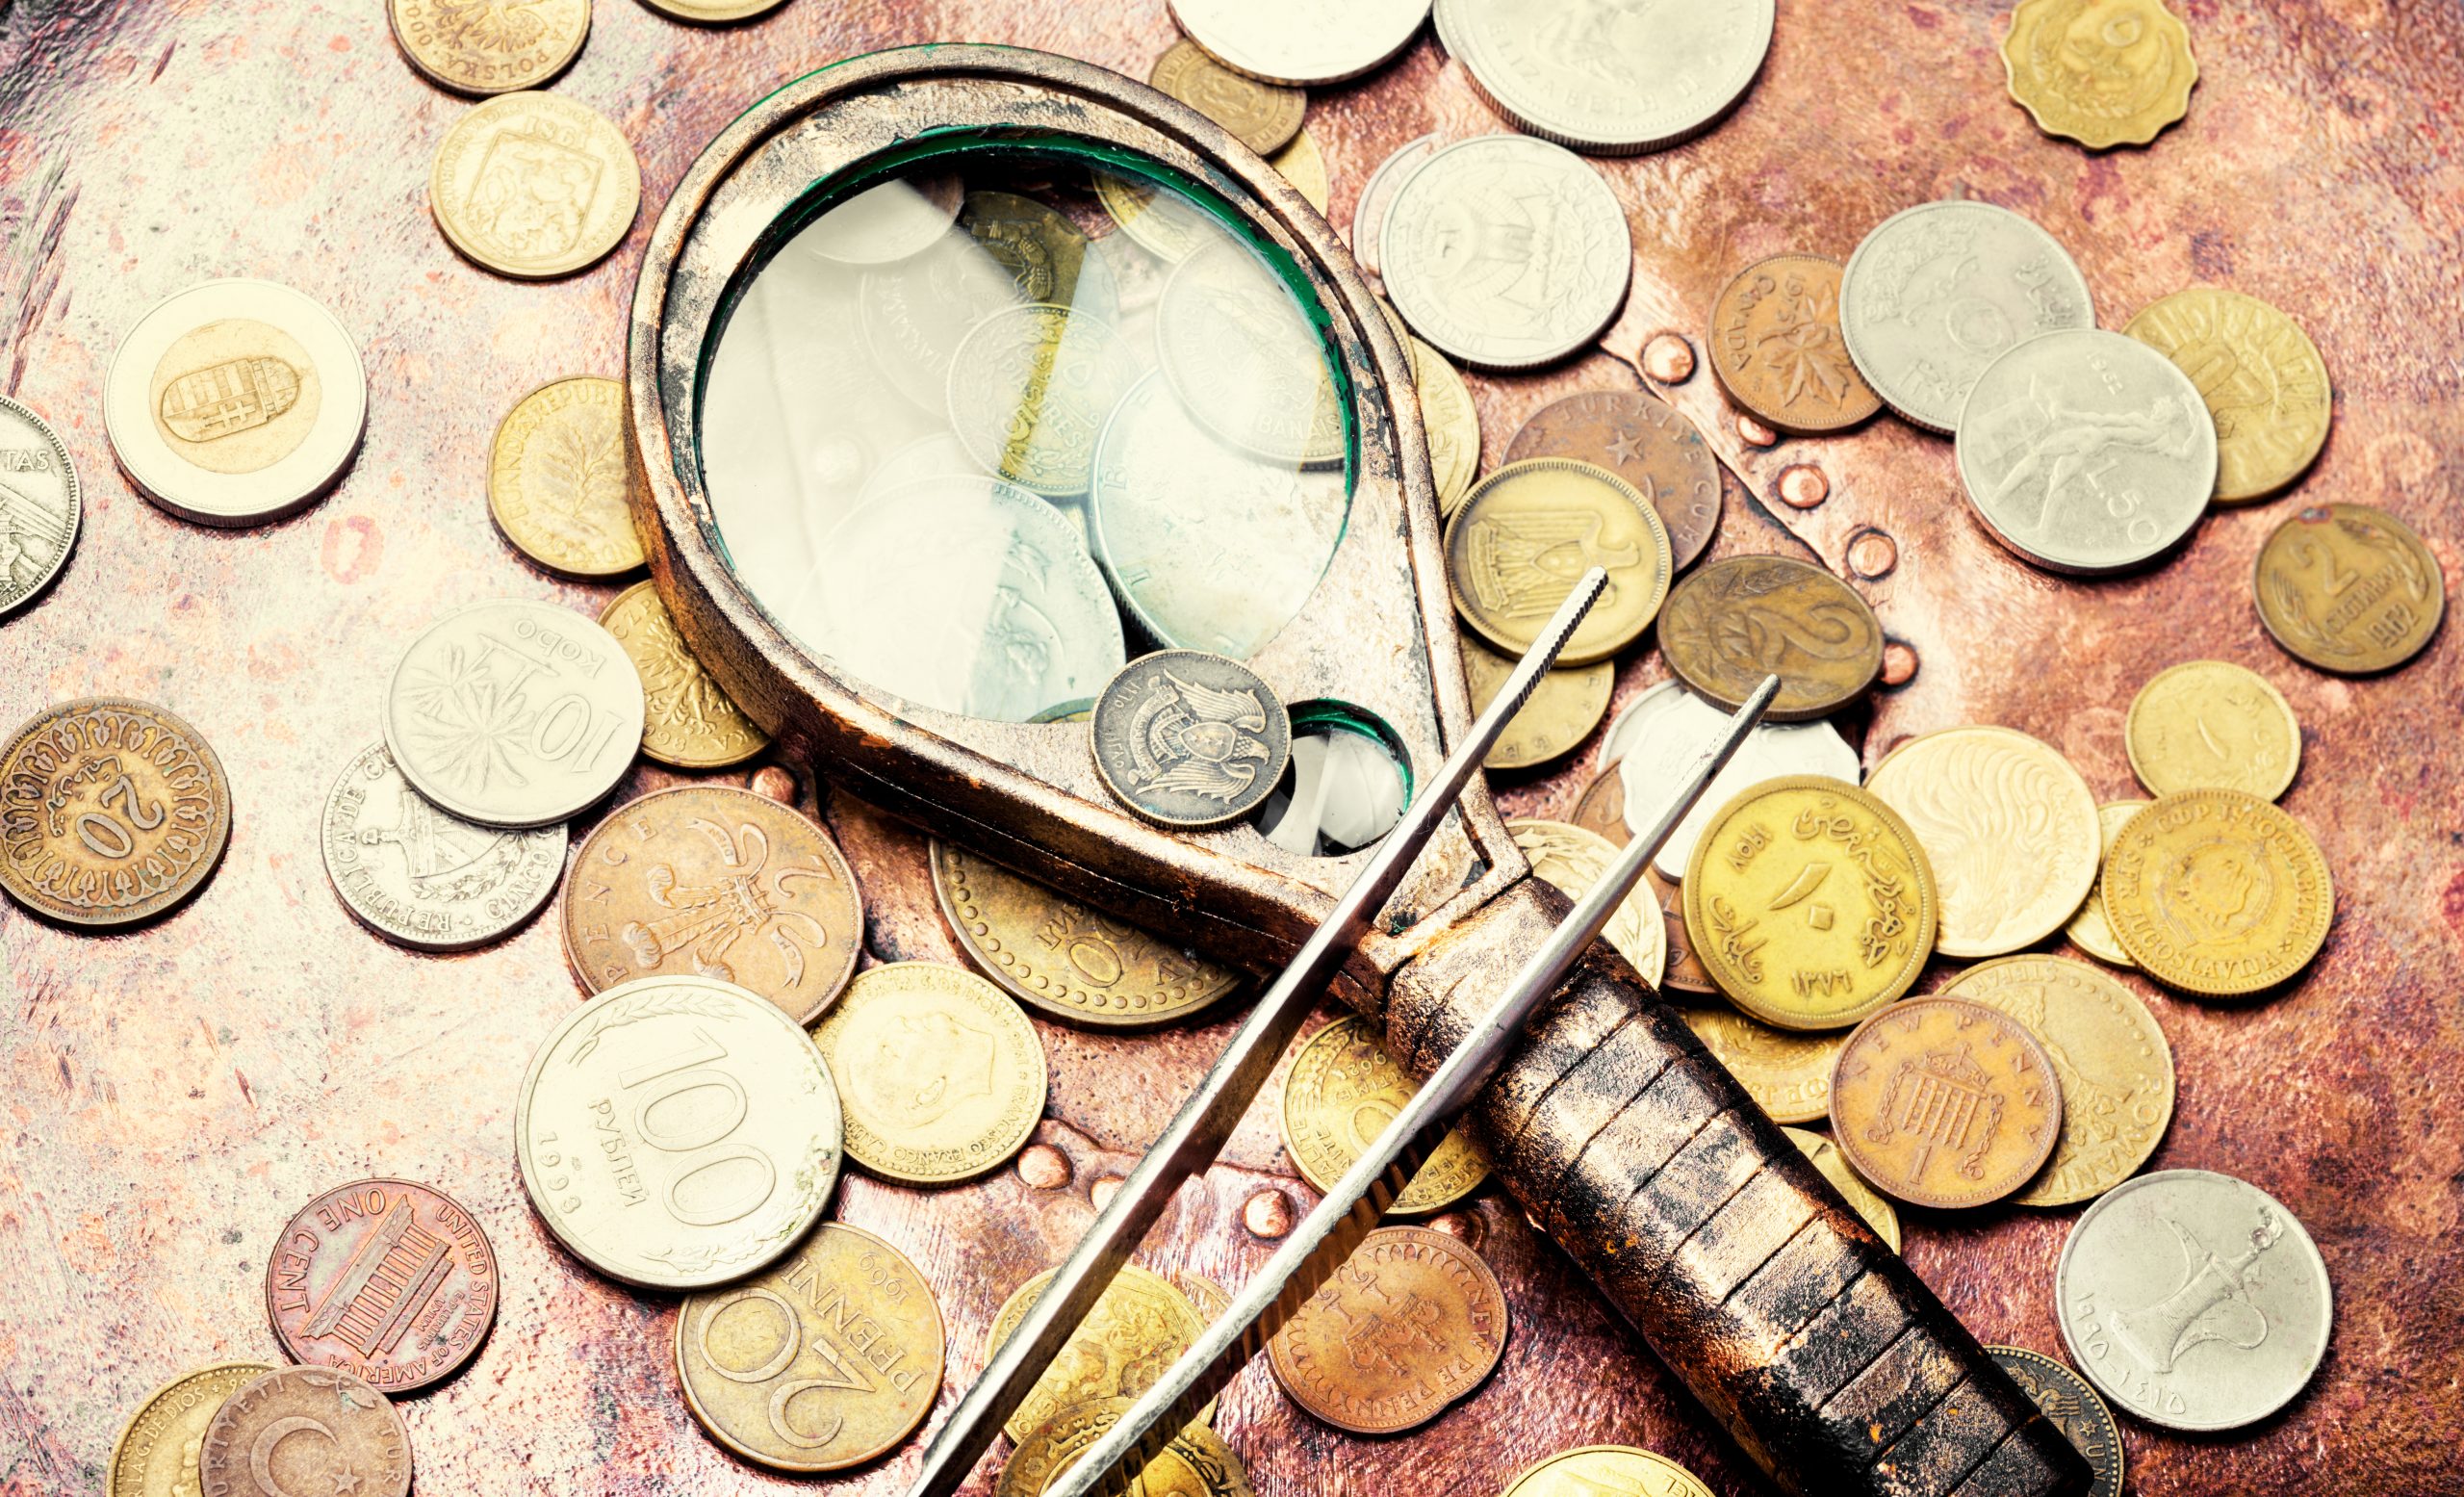 Comment estimer des pièces de monnaie anciennes ? - Mercier art